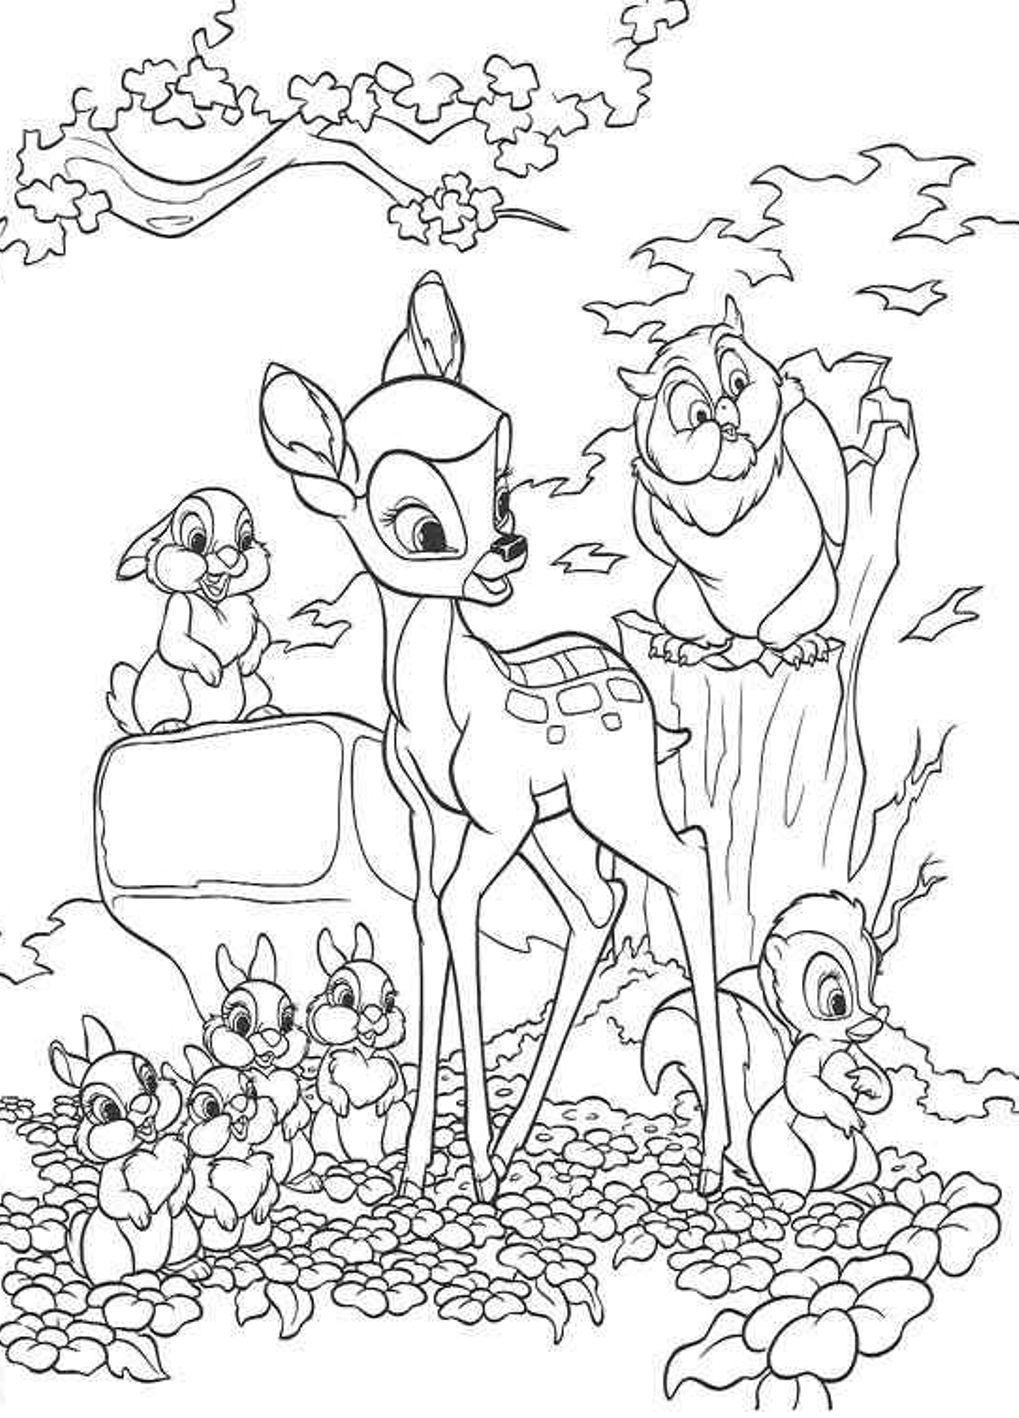 Bambi e amigos da floresta